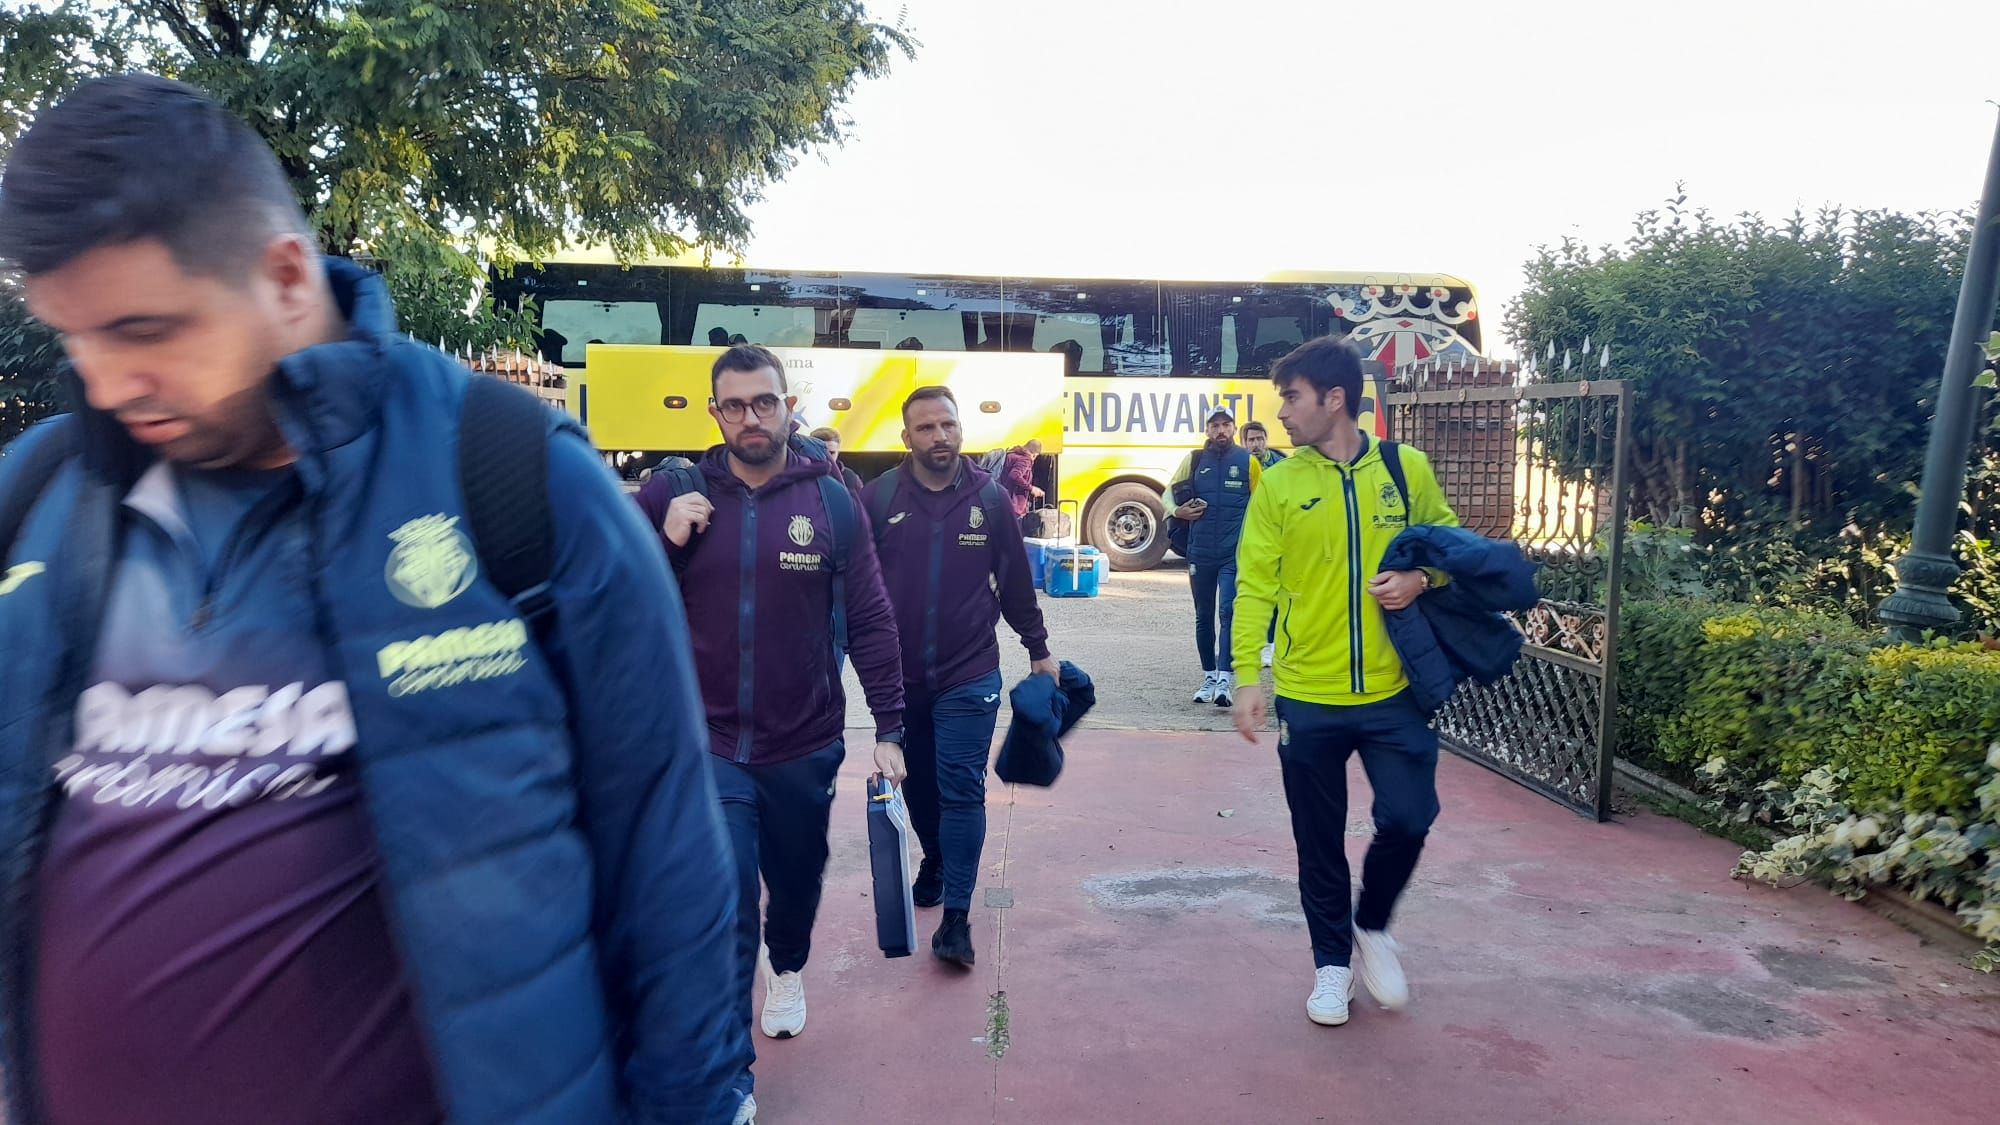 GALERÍA | El Villarreal ya está en Zamora